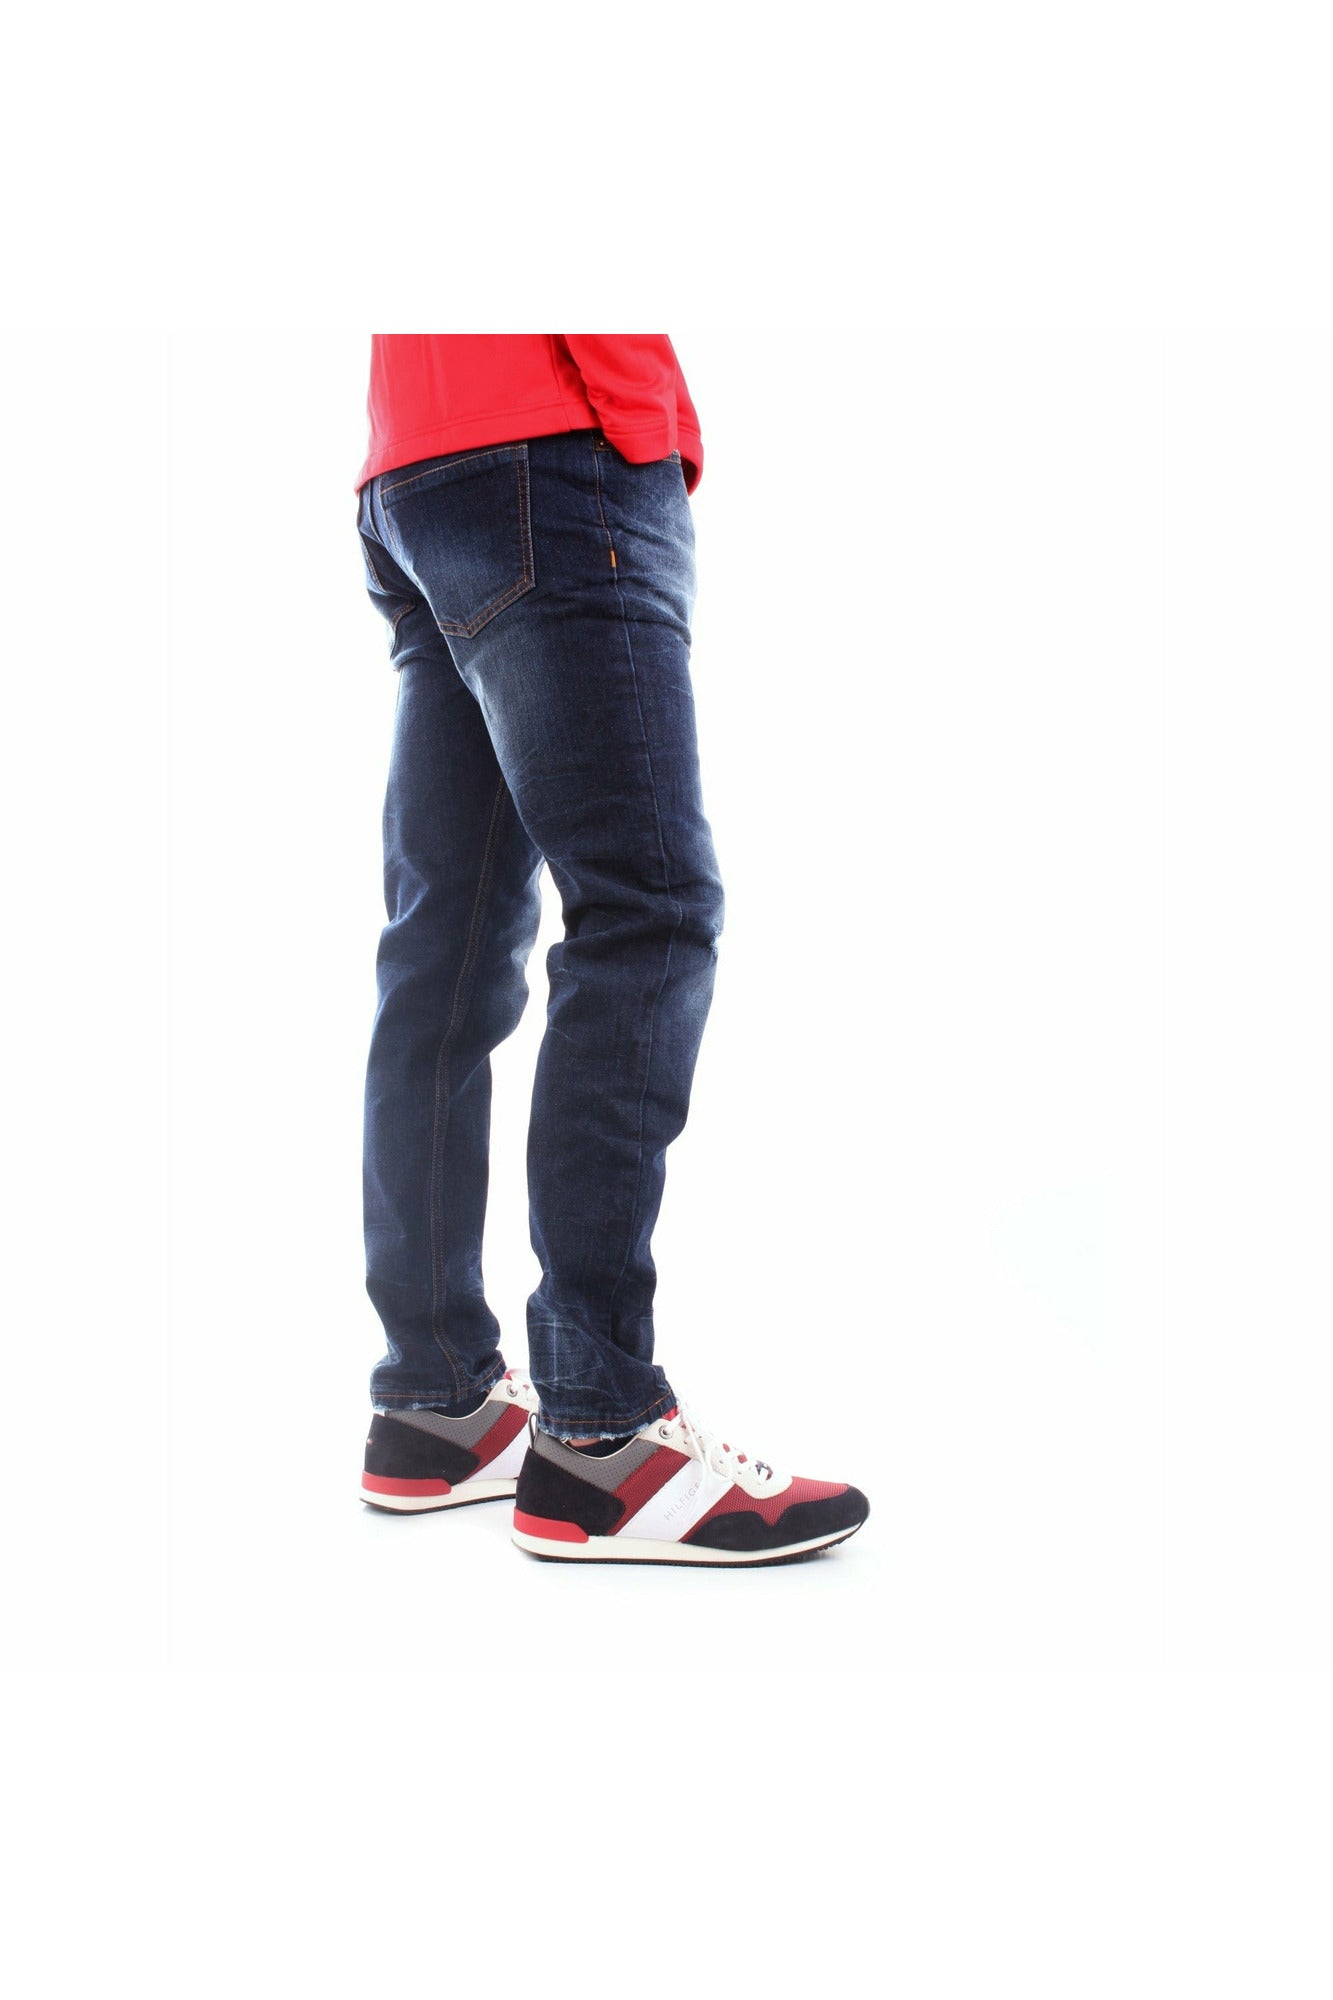 Daboleis DB-006 jeans in denim di cotone